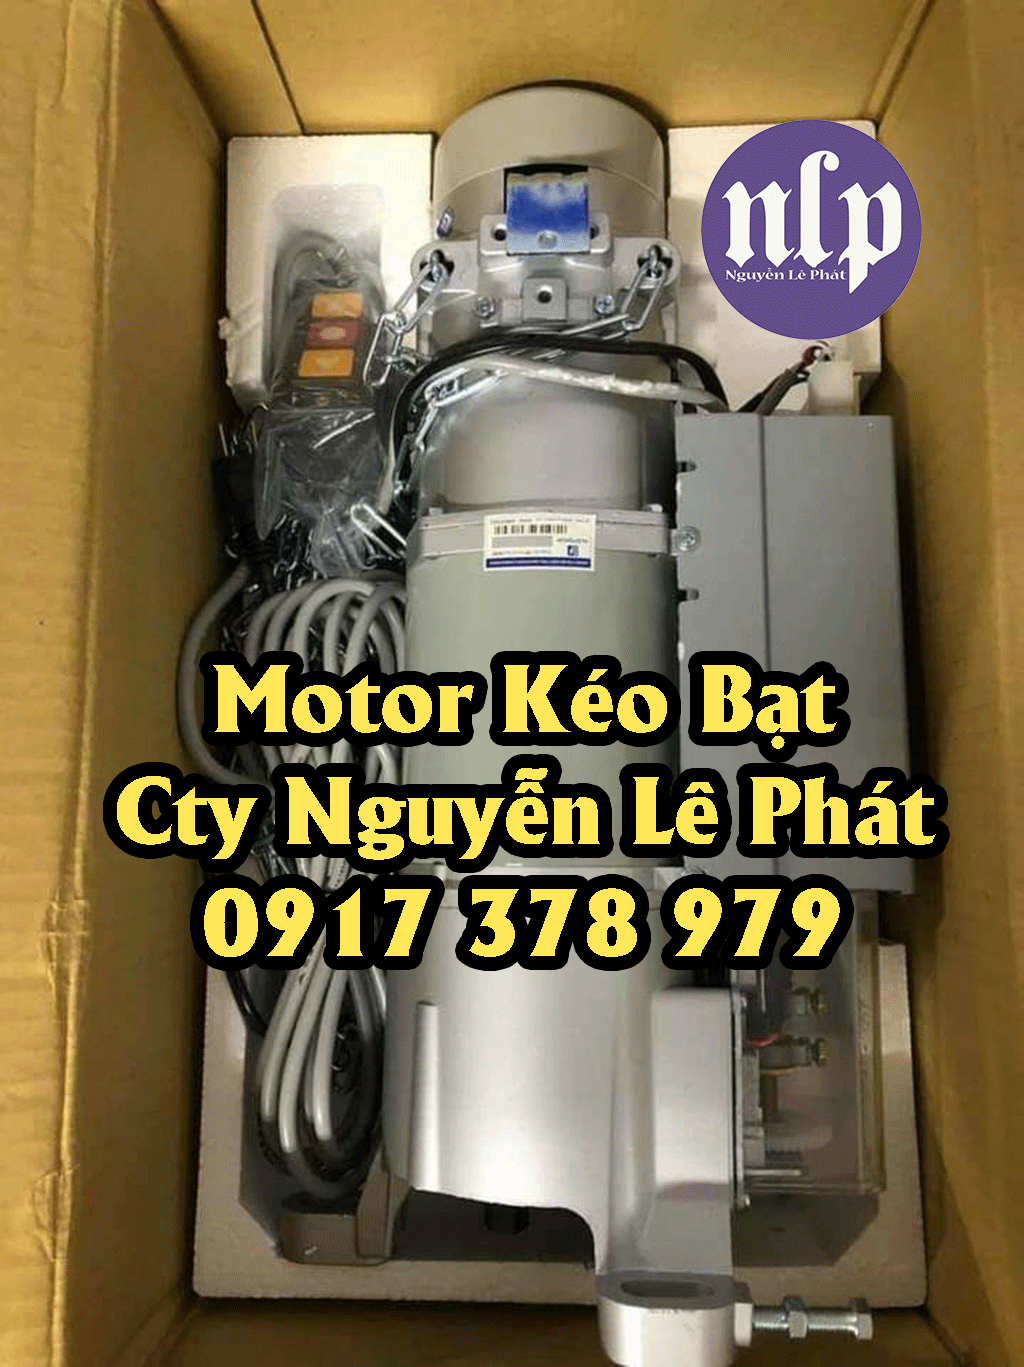 Motor kéo bạt xếp Biên Hòa Đồng Nai